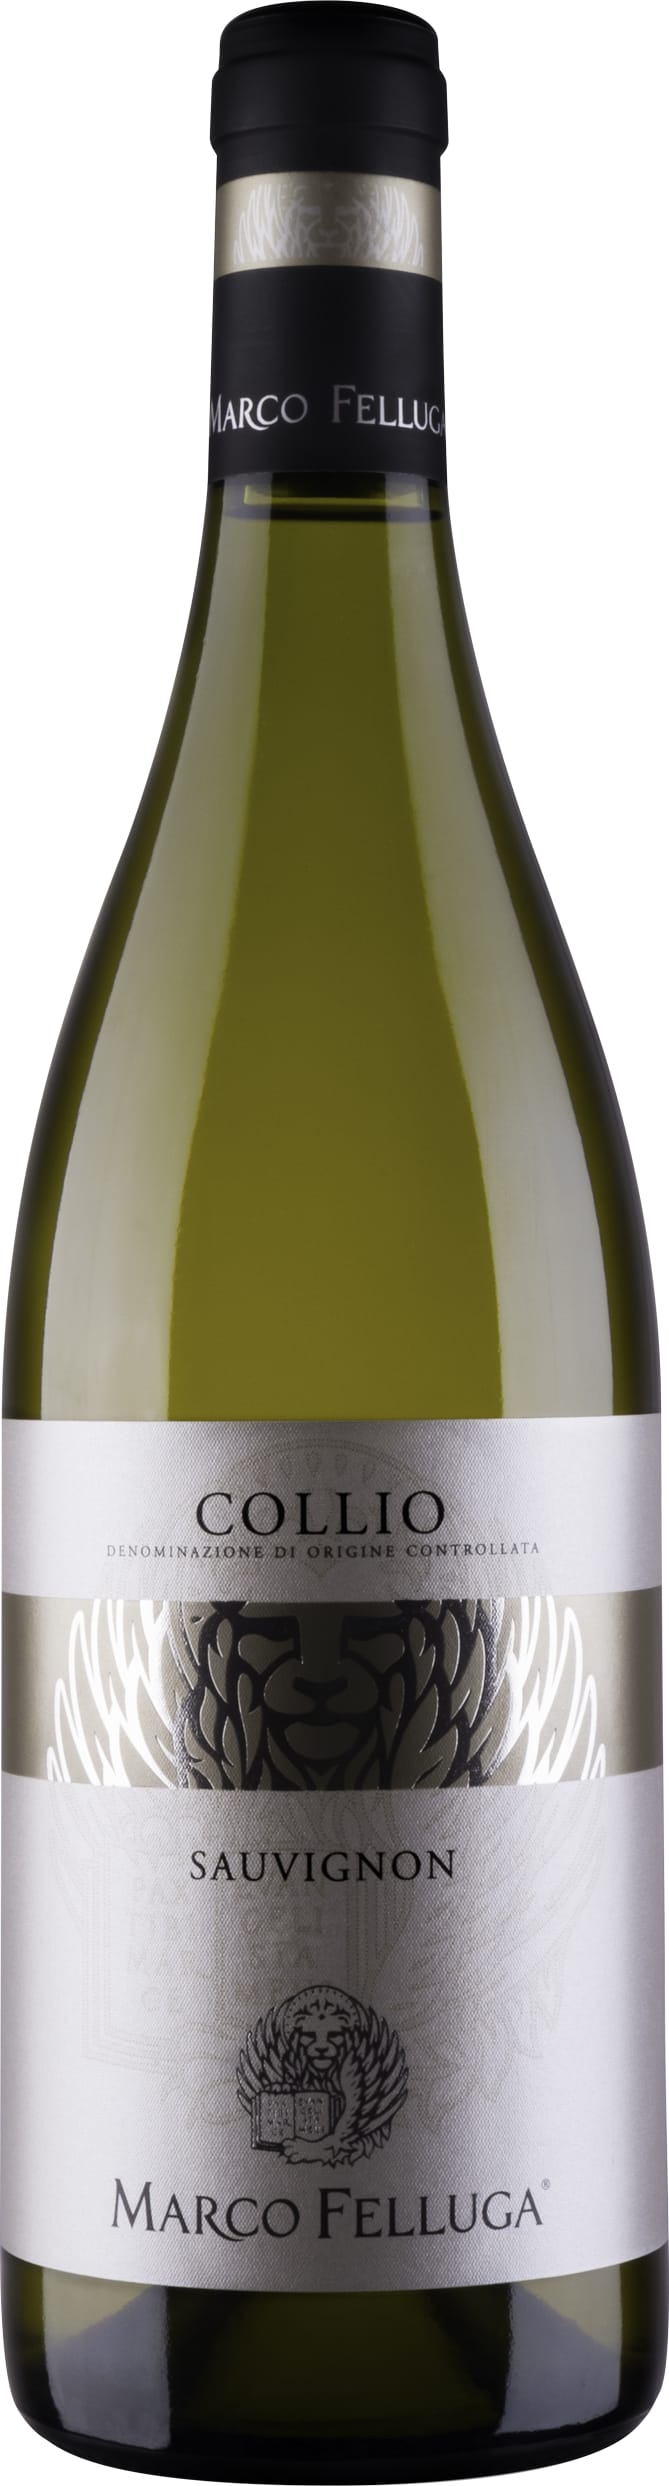 Marco Felluga Collio Sauvignon 2022 75cl - Buy Marco Felluga Wines from GREAT WINES DIRECT wine shop